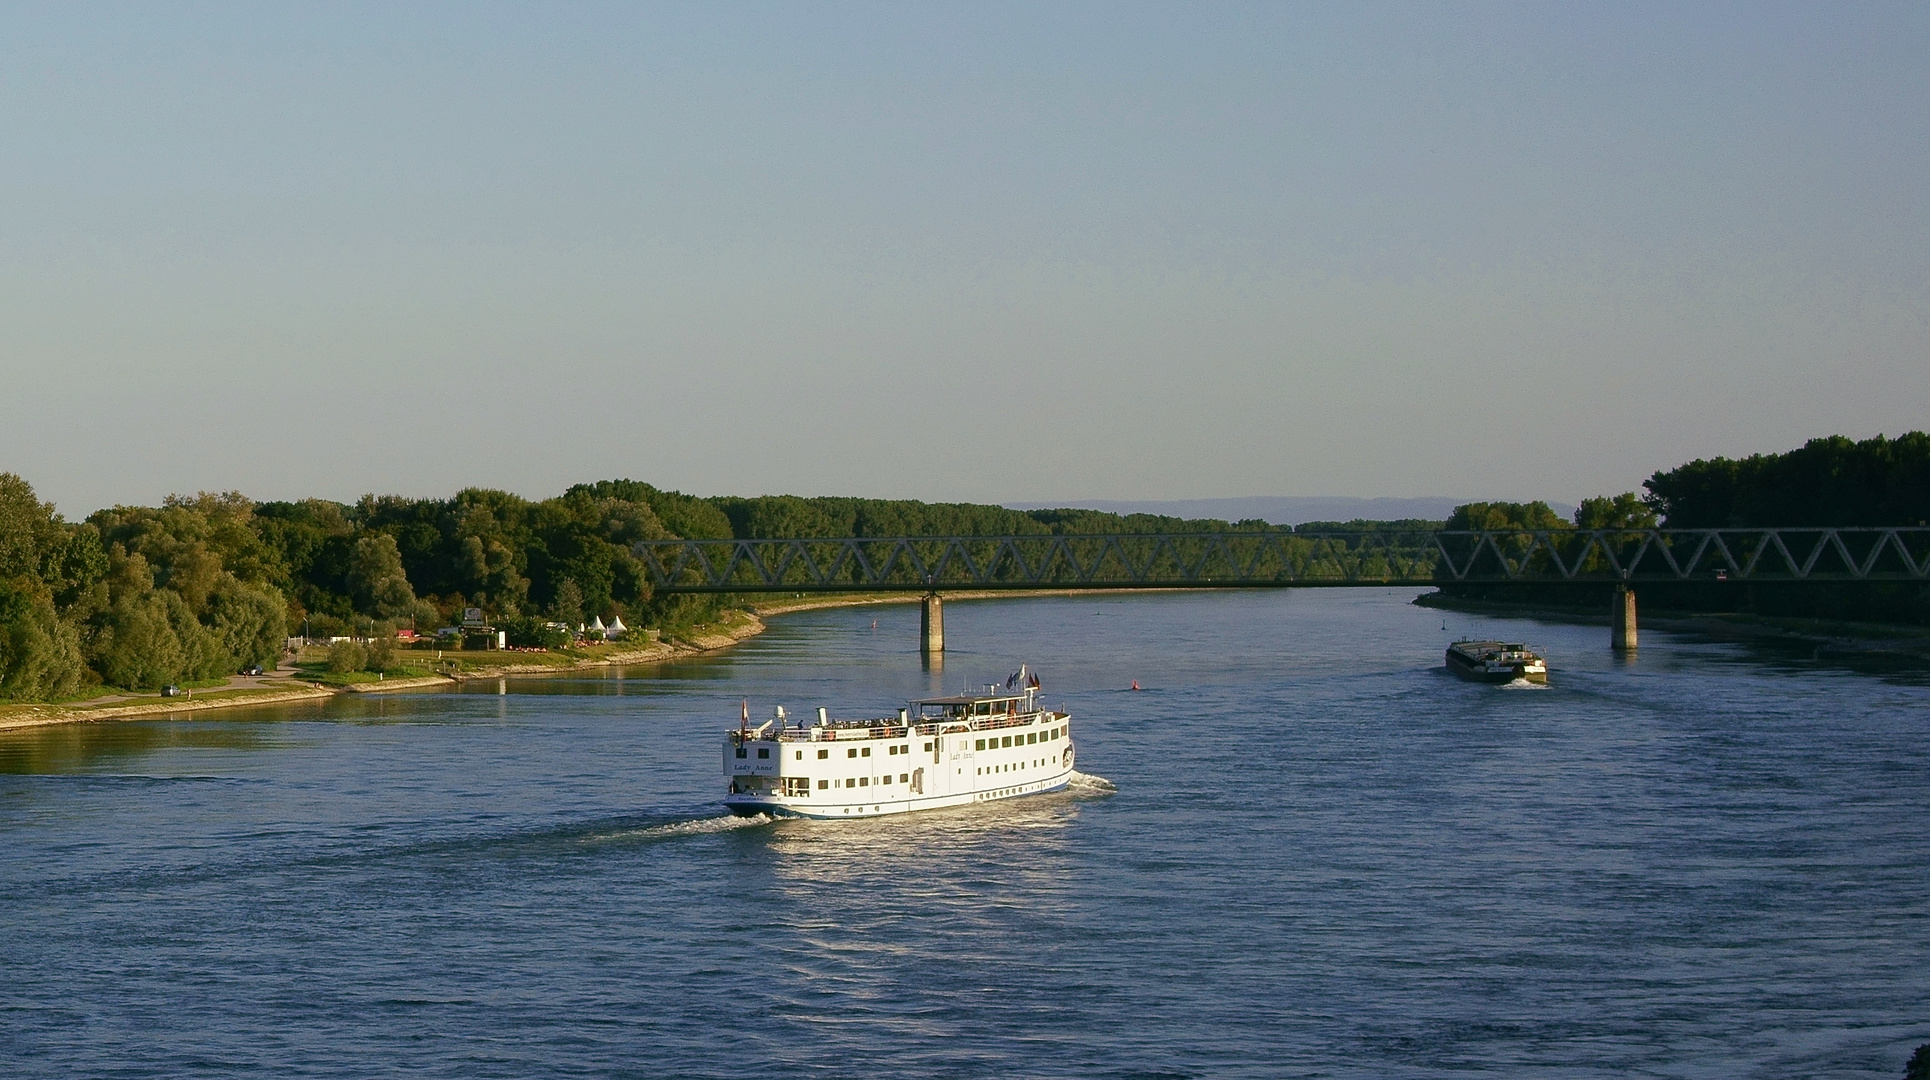 Das alte Hotelschiff  "Lady Anne" auf dem Rhein bei Germersheim. 